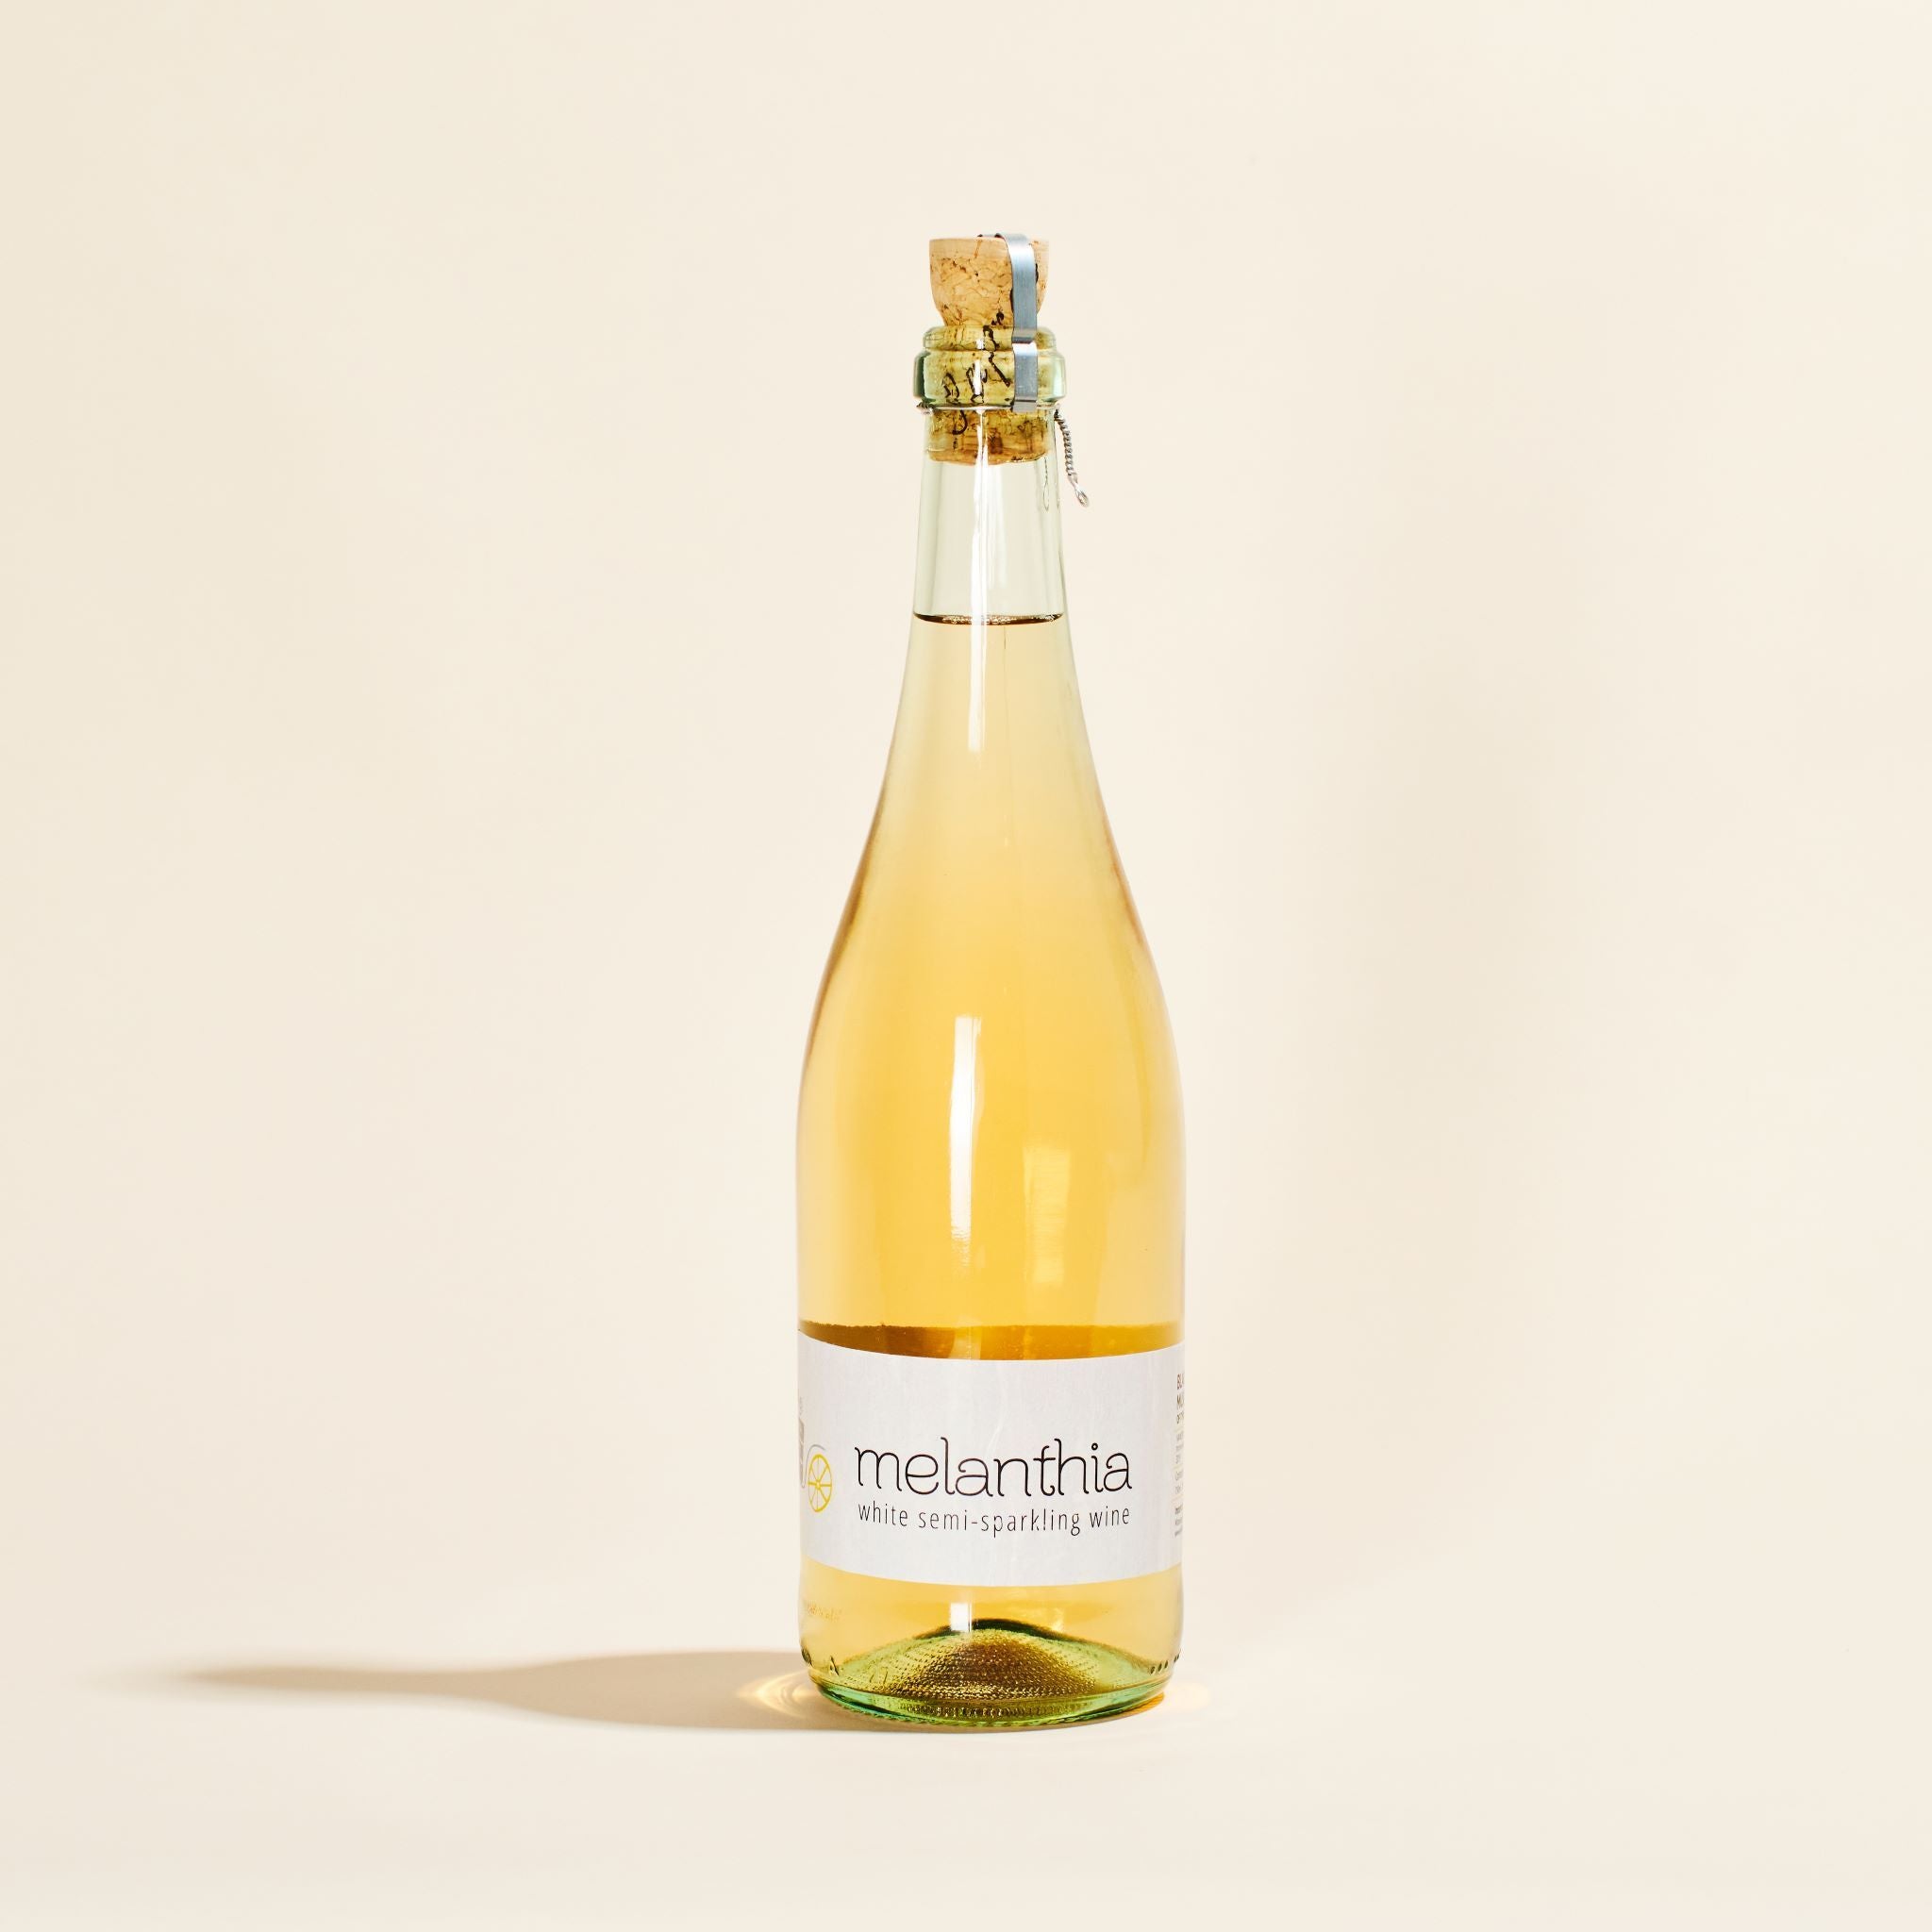 melanthia sparkling papras bio wines tyrnavos greece natural white wine